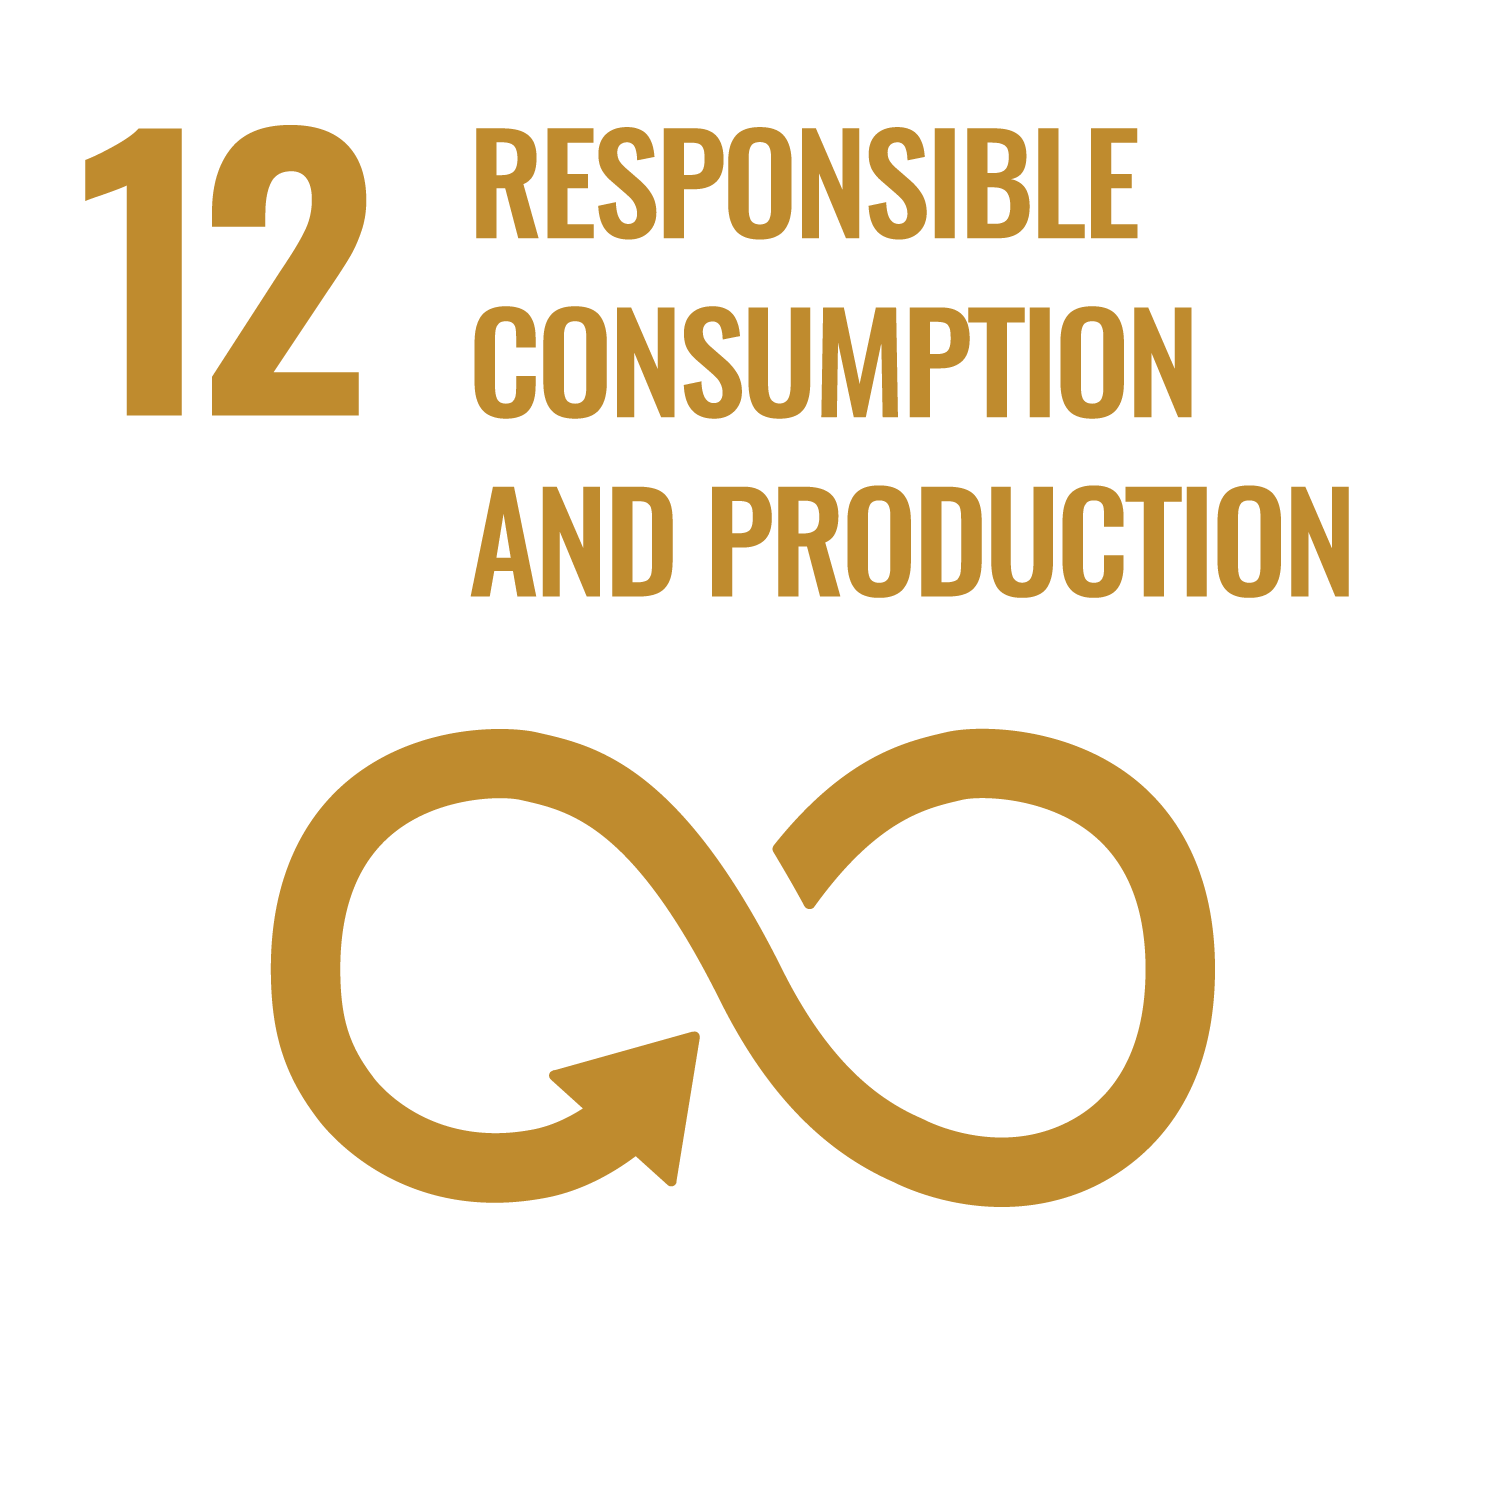 UN SDG 12: Responsible consumption and production